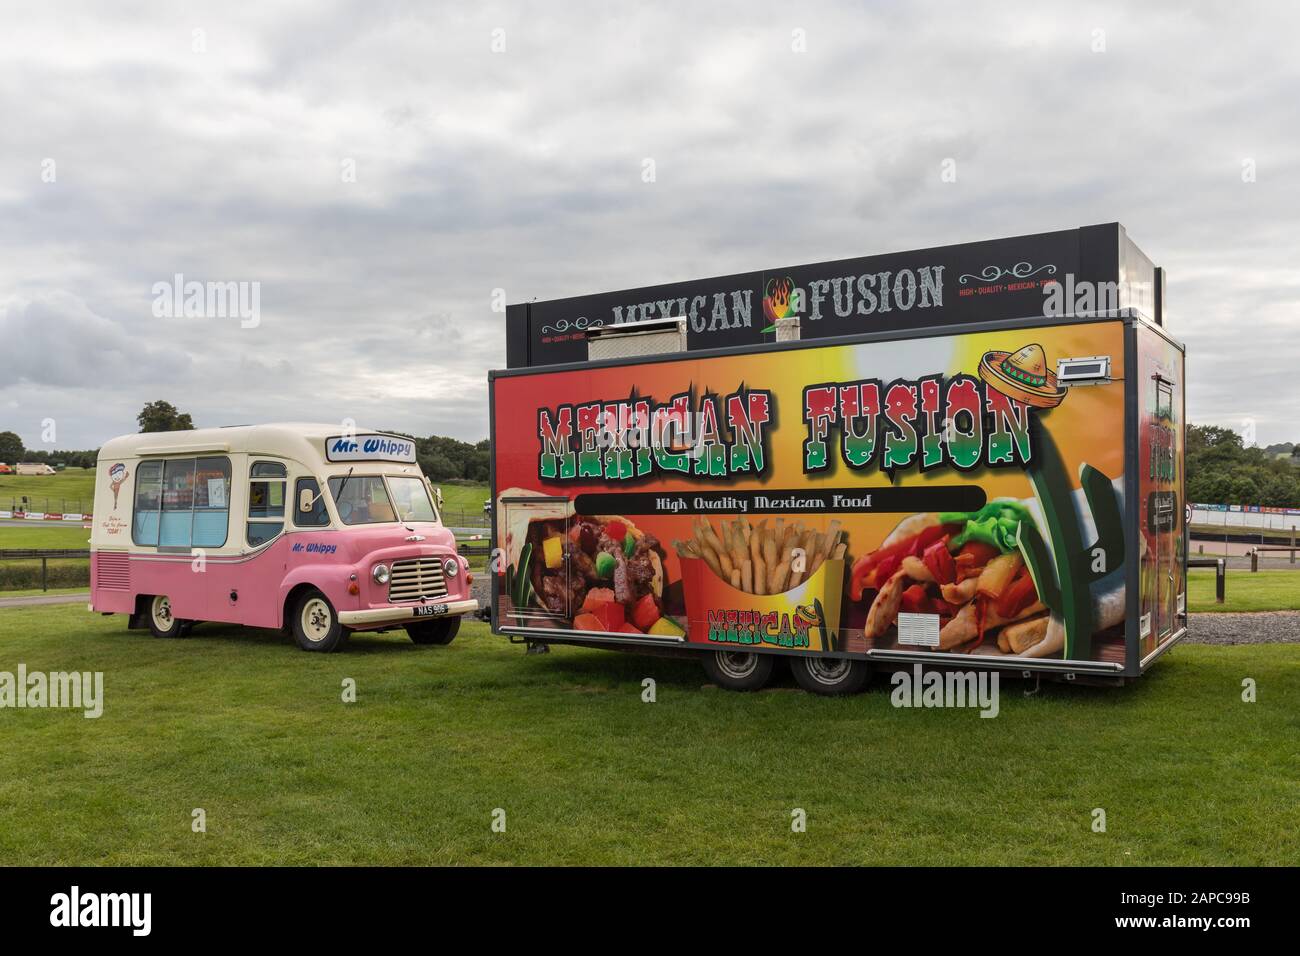 Herr Hippy Eistransporter und Mexican Fusion mobiler Catering-Lieferwagen - Oulton Park, Großbritannien Stockfoto